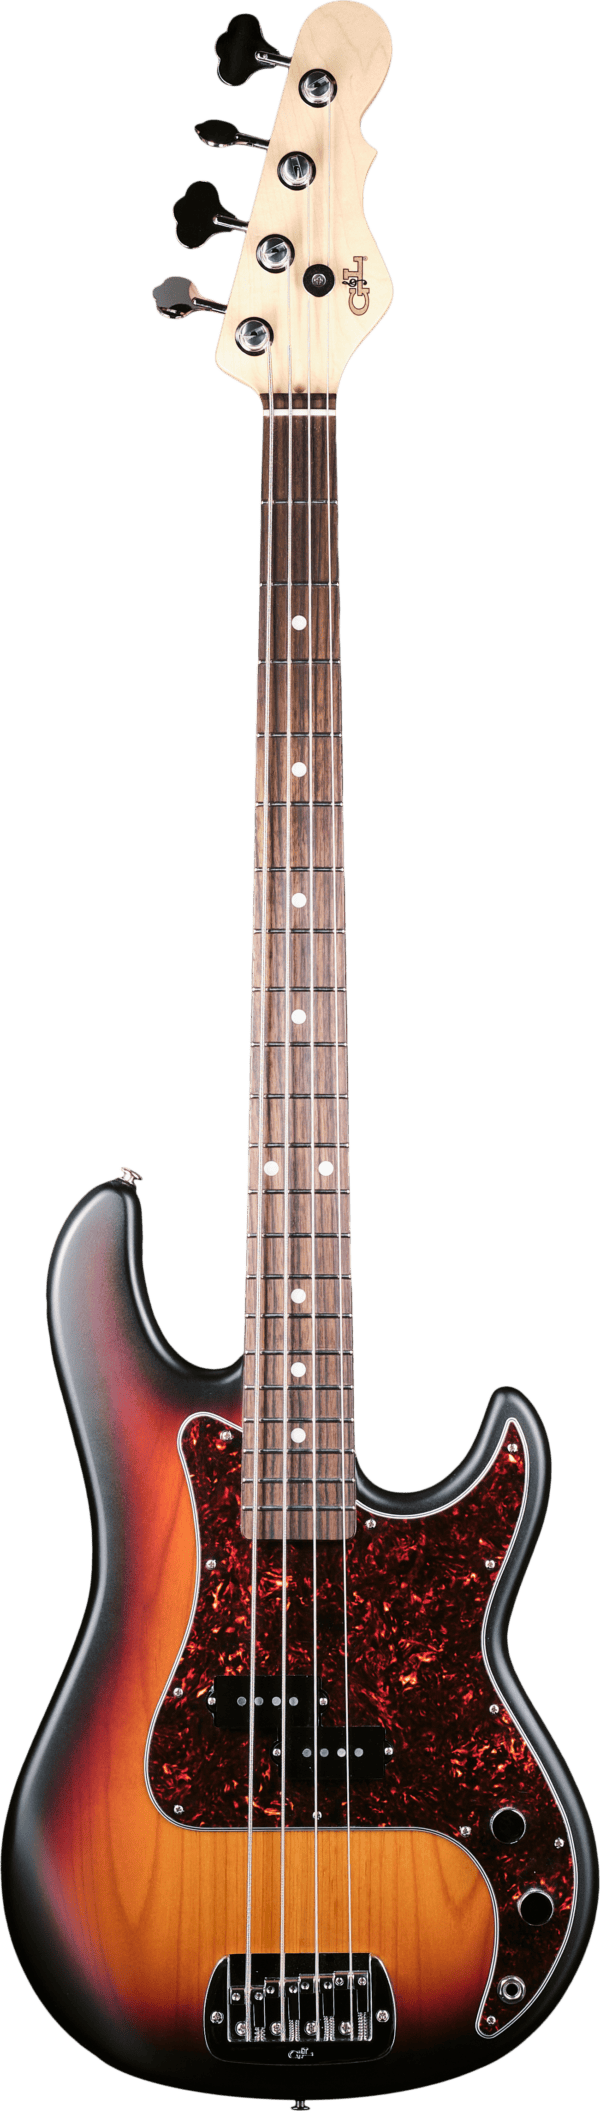 G&L Guitars LB-100 Build To Order USA 3-Tone Sunburst